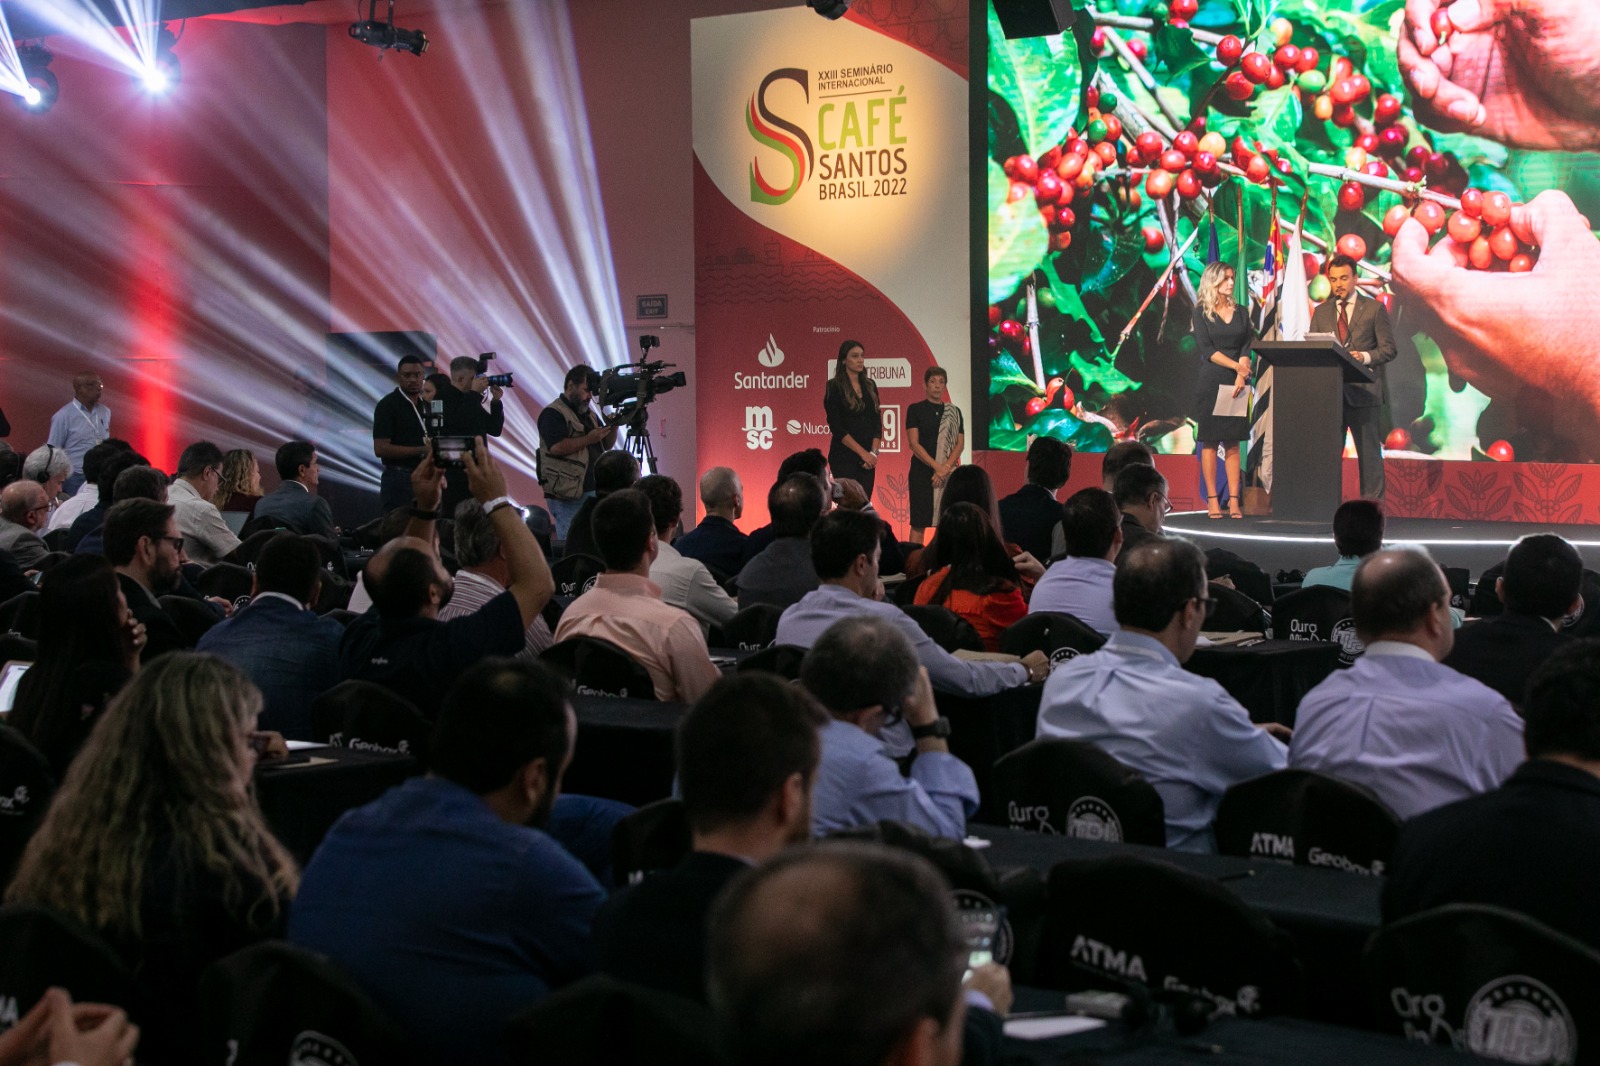 Santos receberá 24º Seminário Internacional do Café | Jornal da Orla